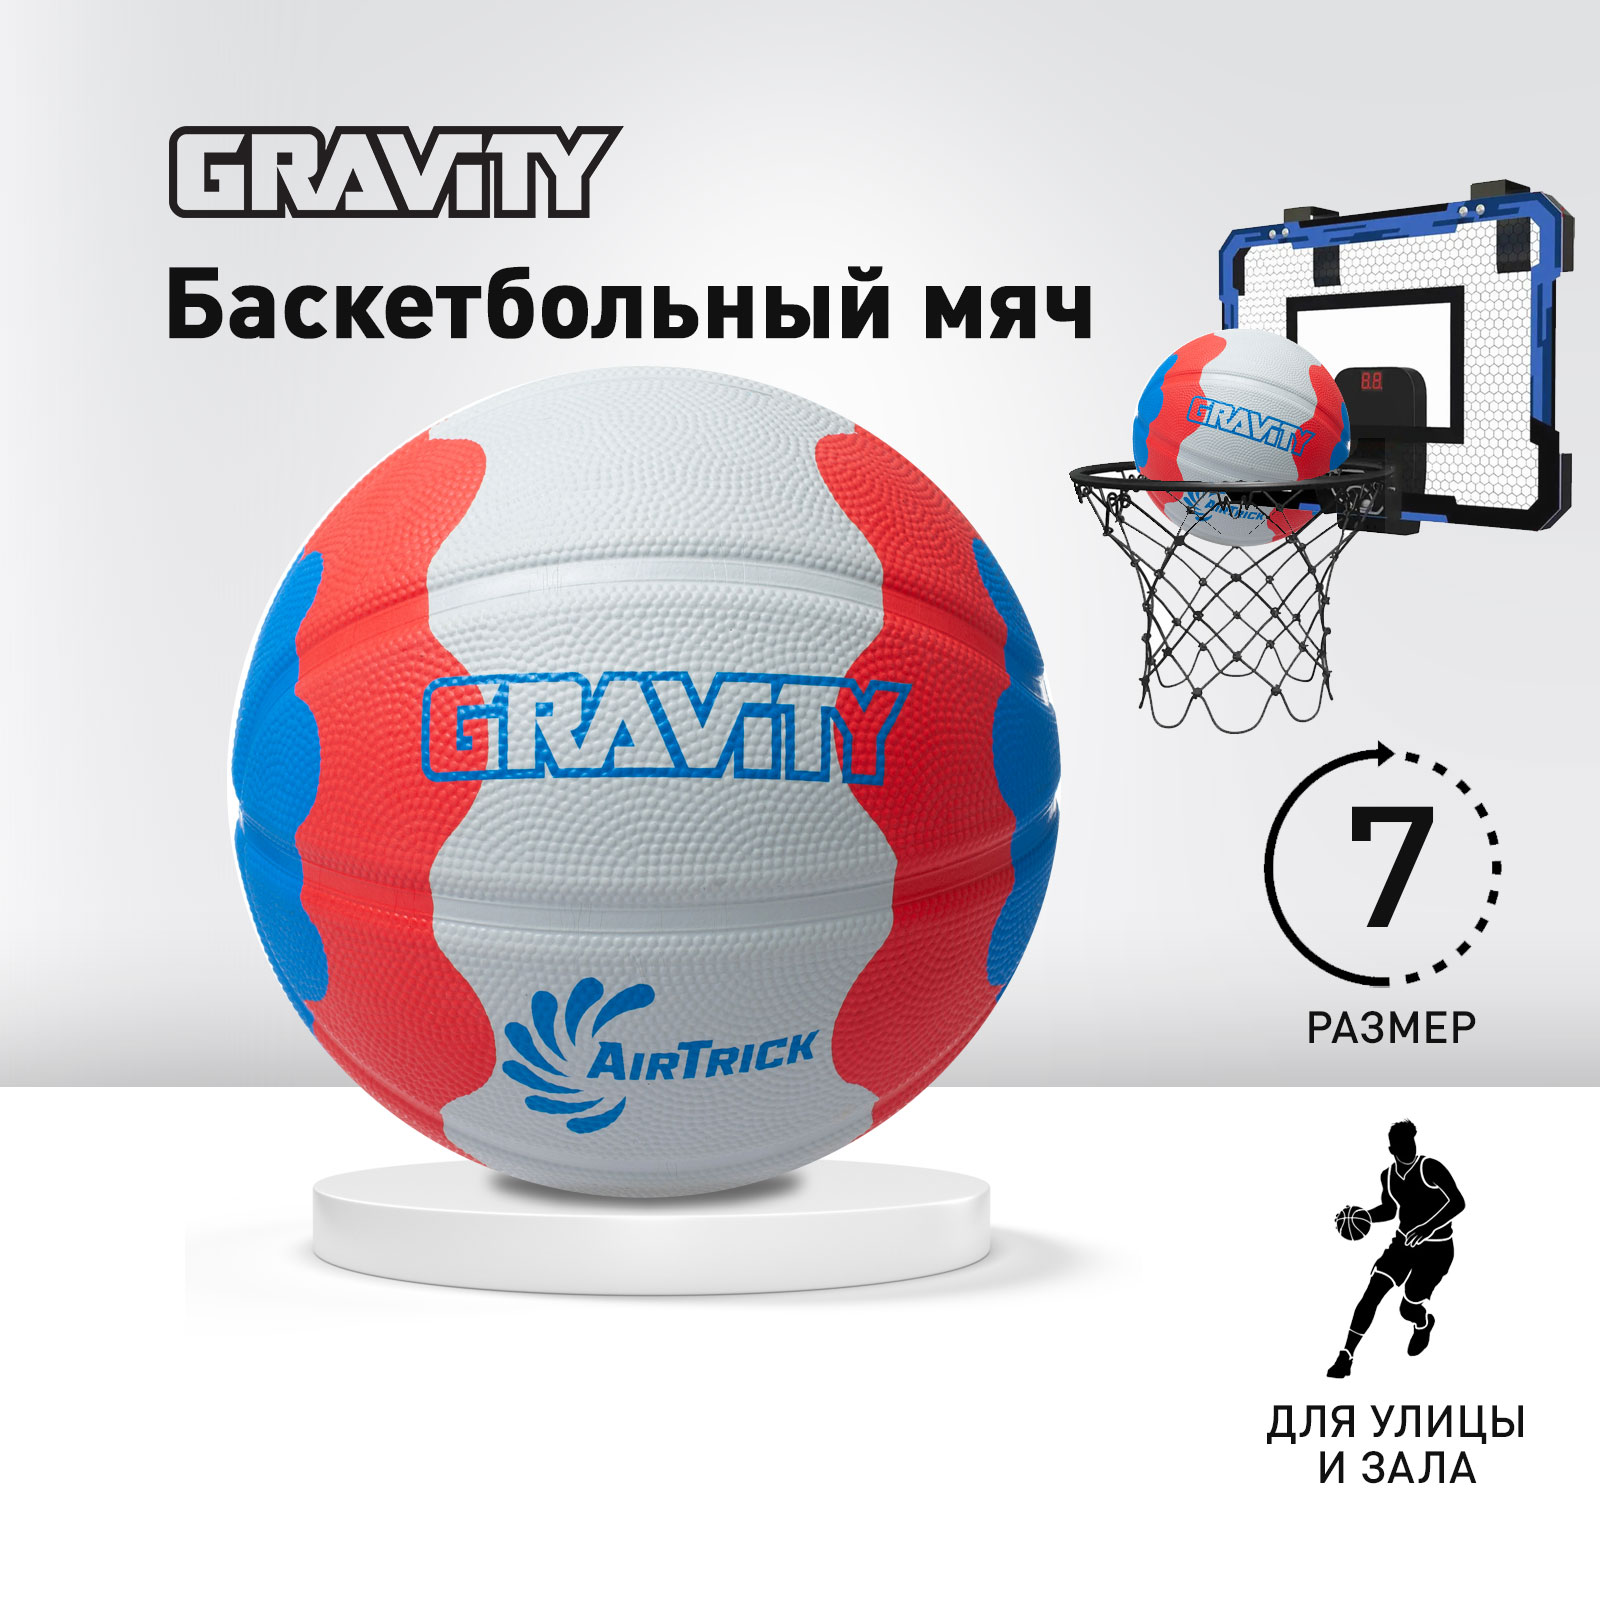 Баскетбольный мяч Gravity, вспененная резина, белый красный синий, размер 7